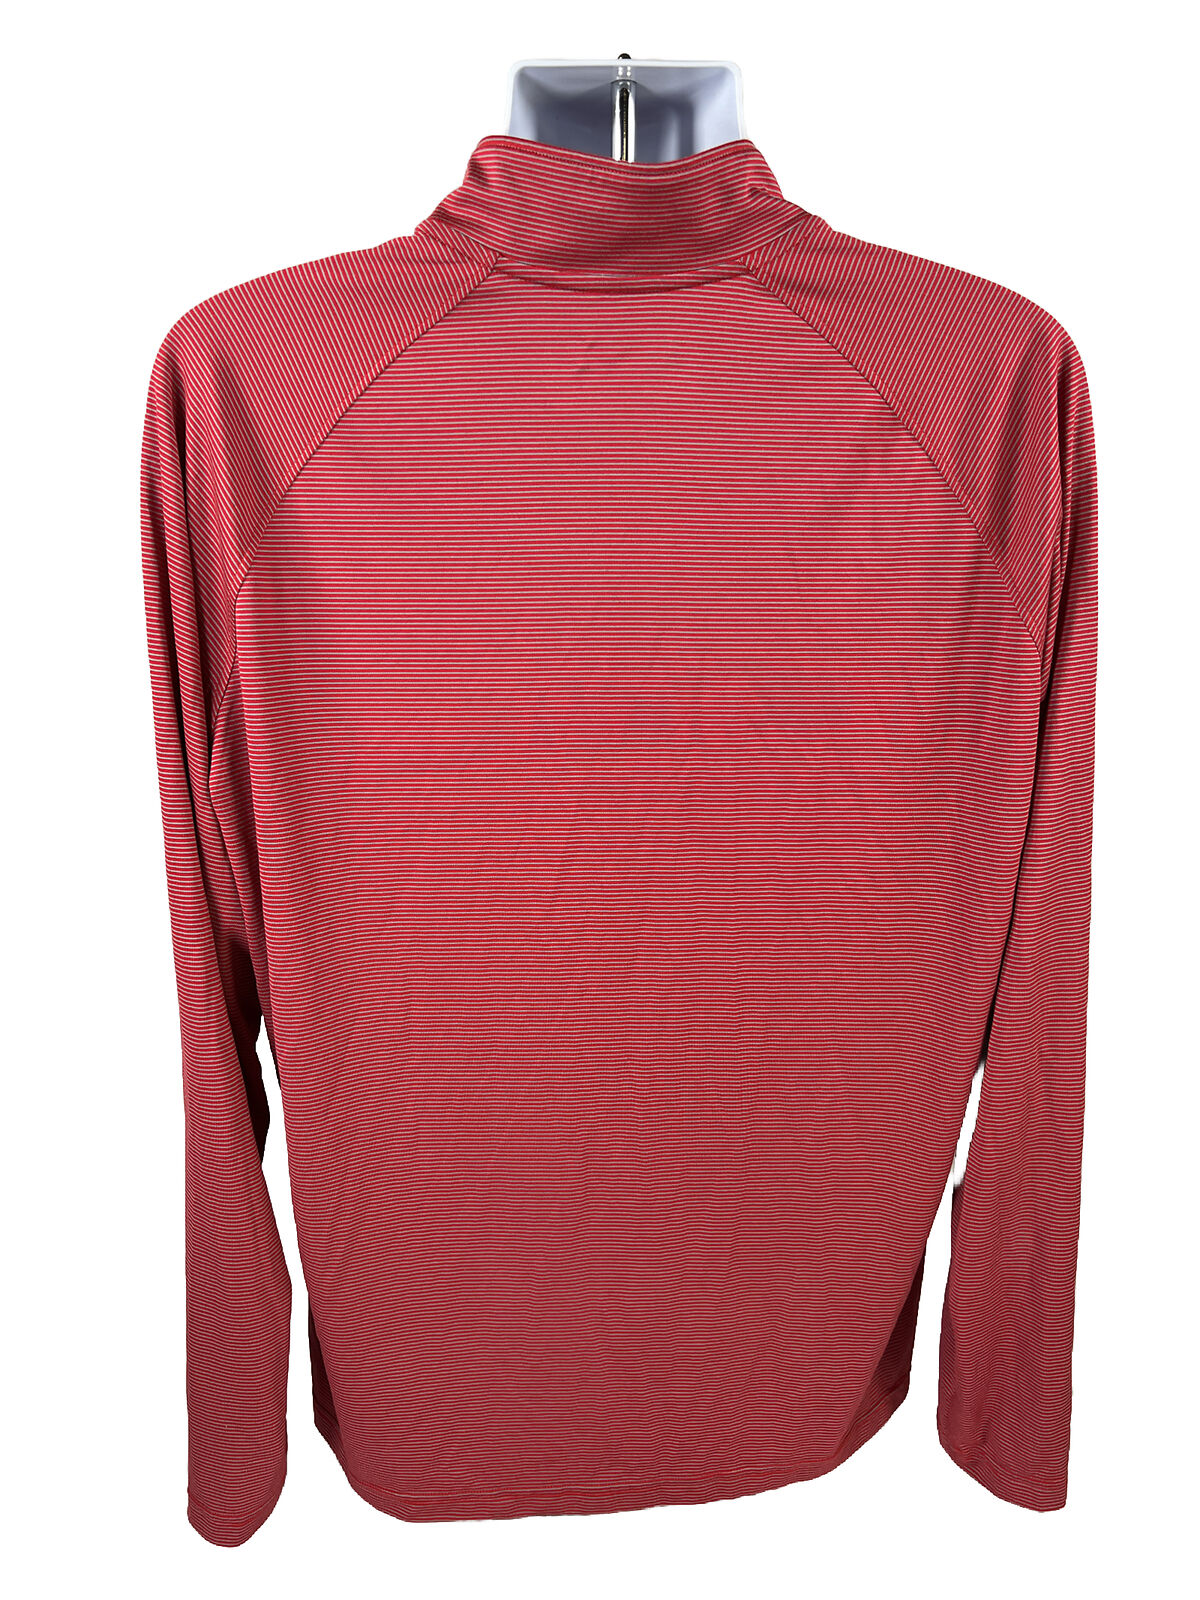 Under Armour Men's Red Striped 1/4 Zip HeatGear Shirt - XL